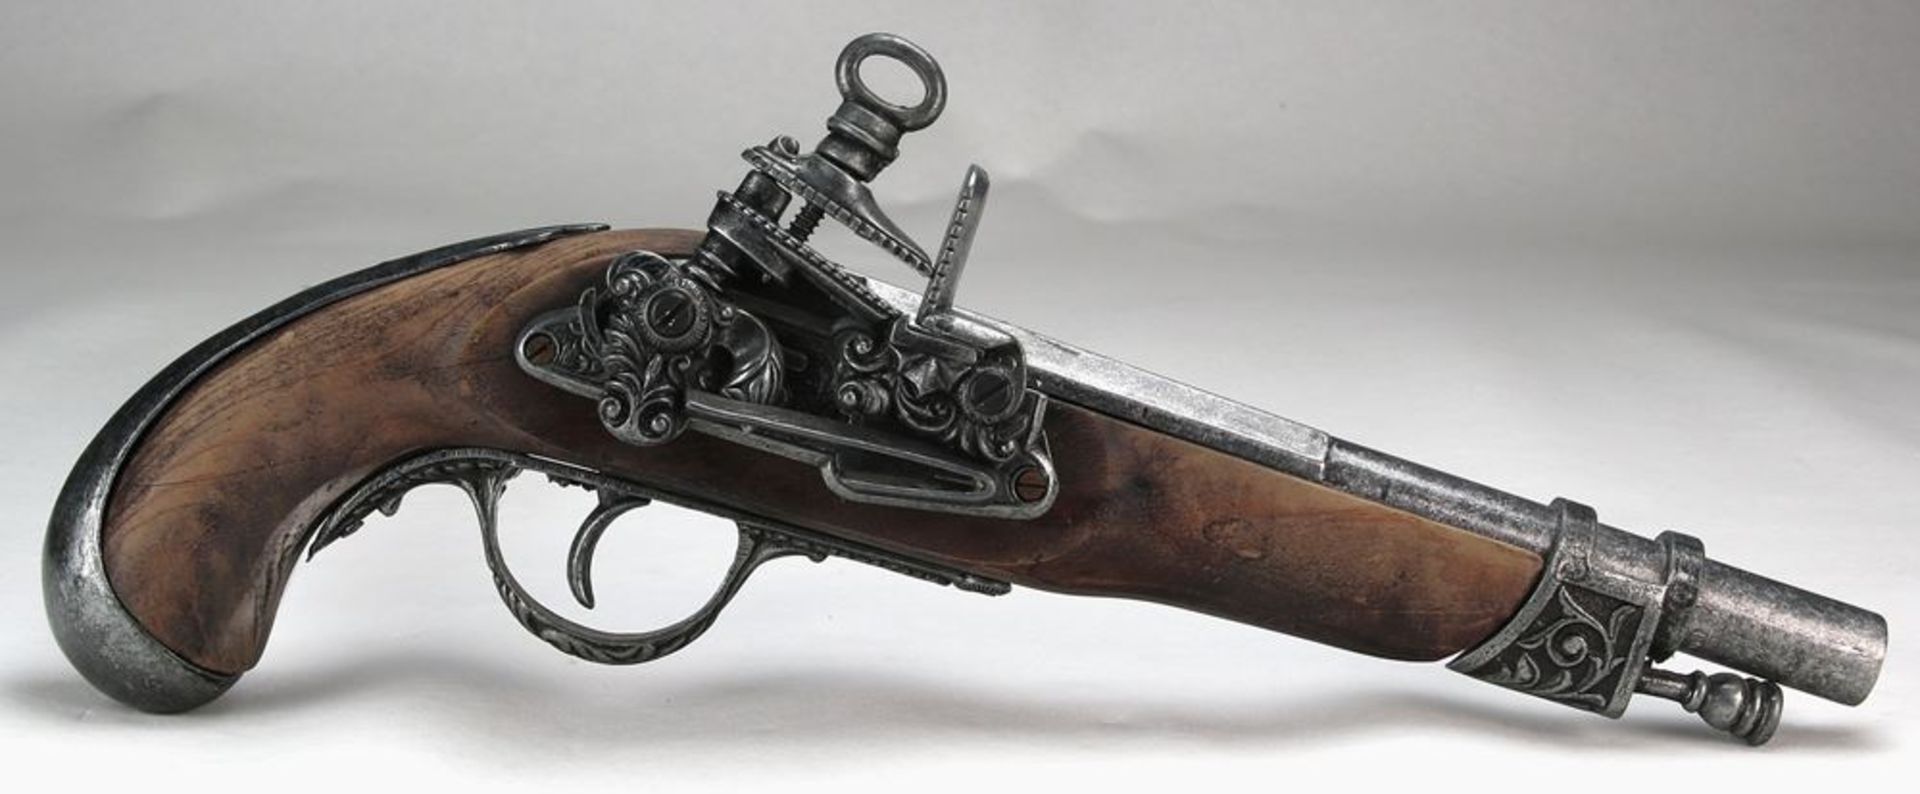 Steinschloßpistolein der Art einer barocken Waffe. Länge ca. 32 cm, Gewicht ca. 6,8 Kilogramm.